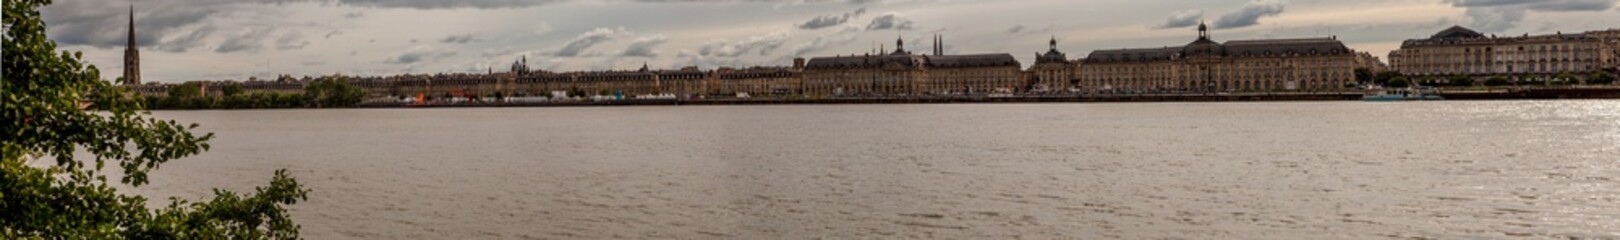 Bordeaux en panorama, France